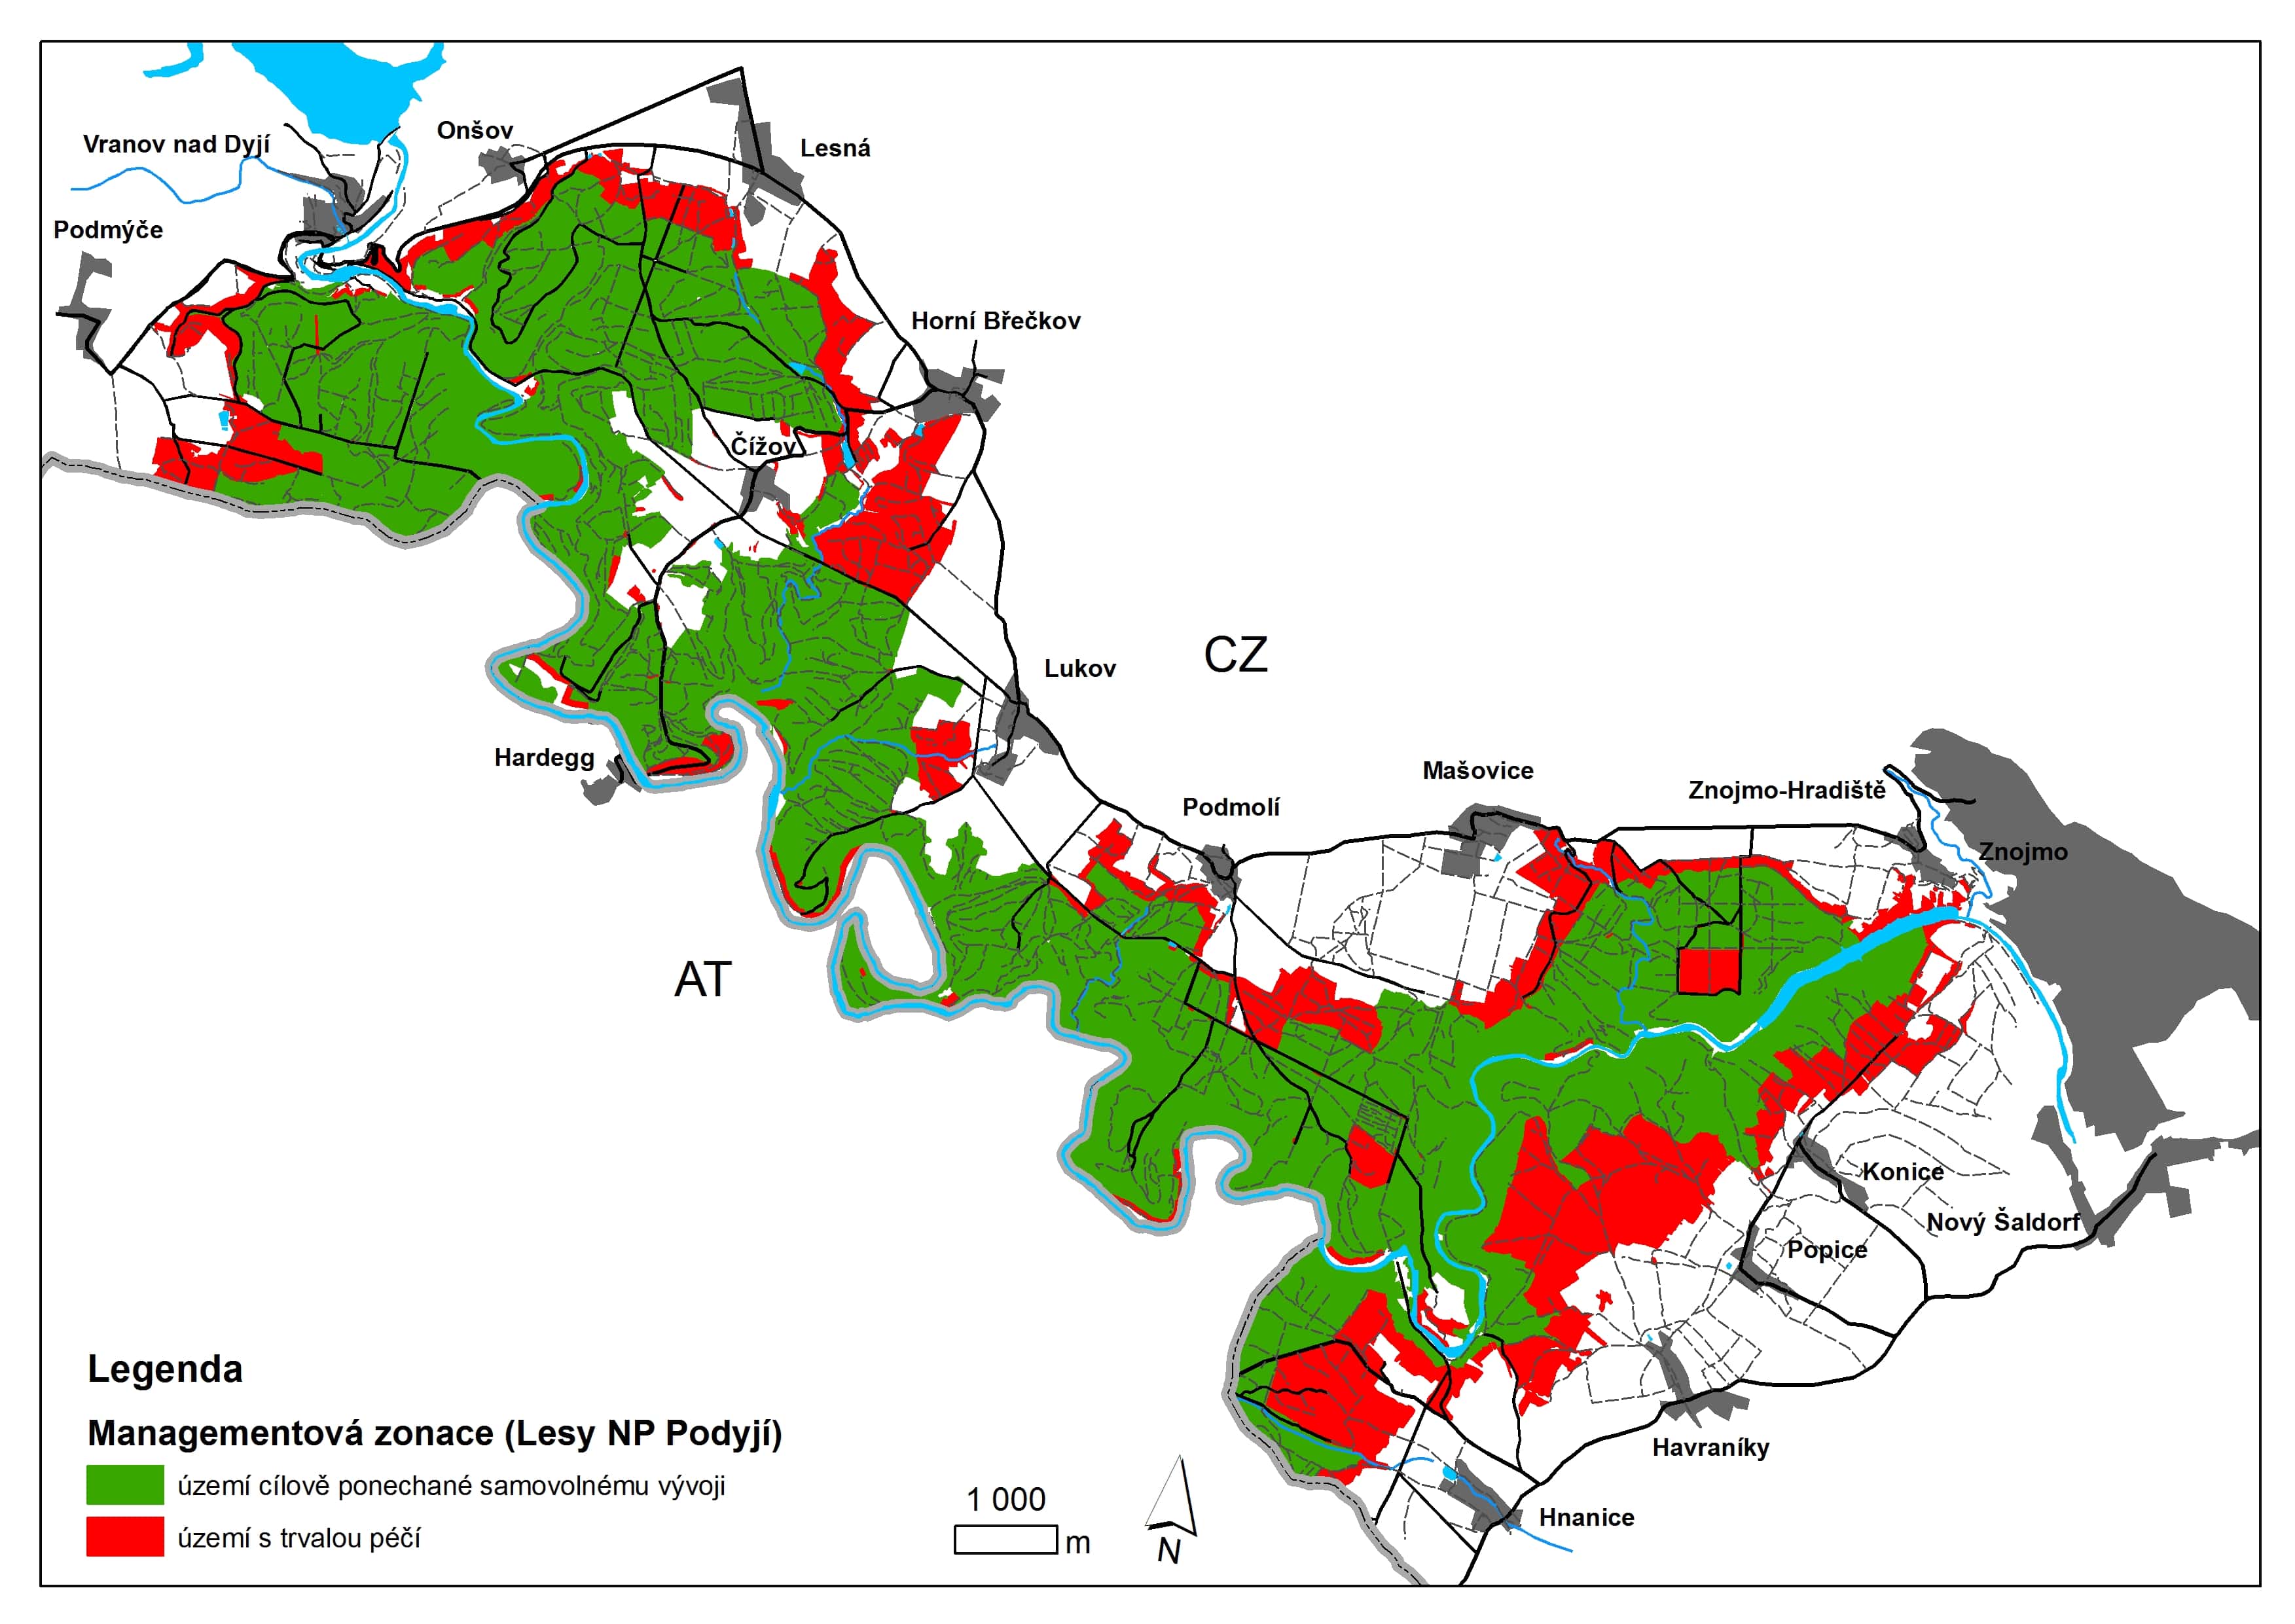 Rozdělení území NP z hlediska péče o biotopy. Zeleně vyznačené území je určeno pro samovolný vývoj, na území vyznačeném červeně jsou lesní porosty, v nichž bude sukcese blokována s cílem udržení biotopů závislých na péči člověka.